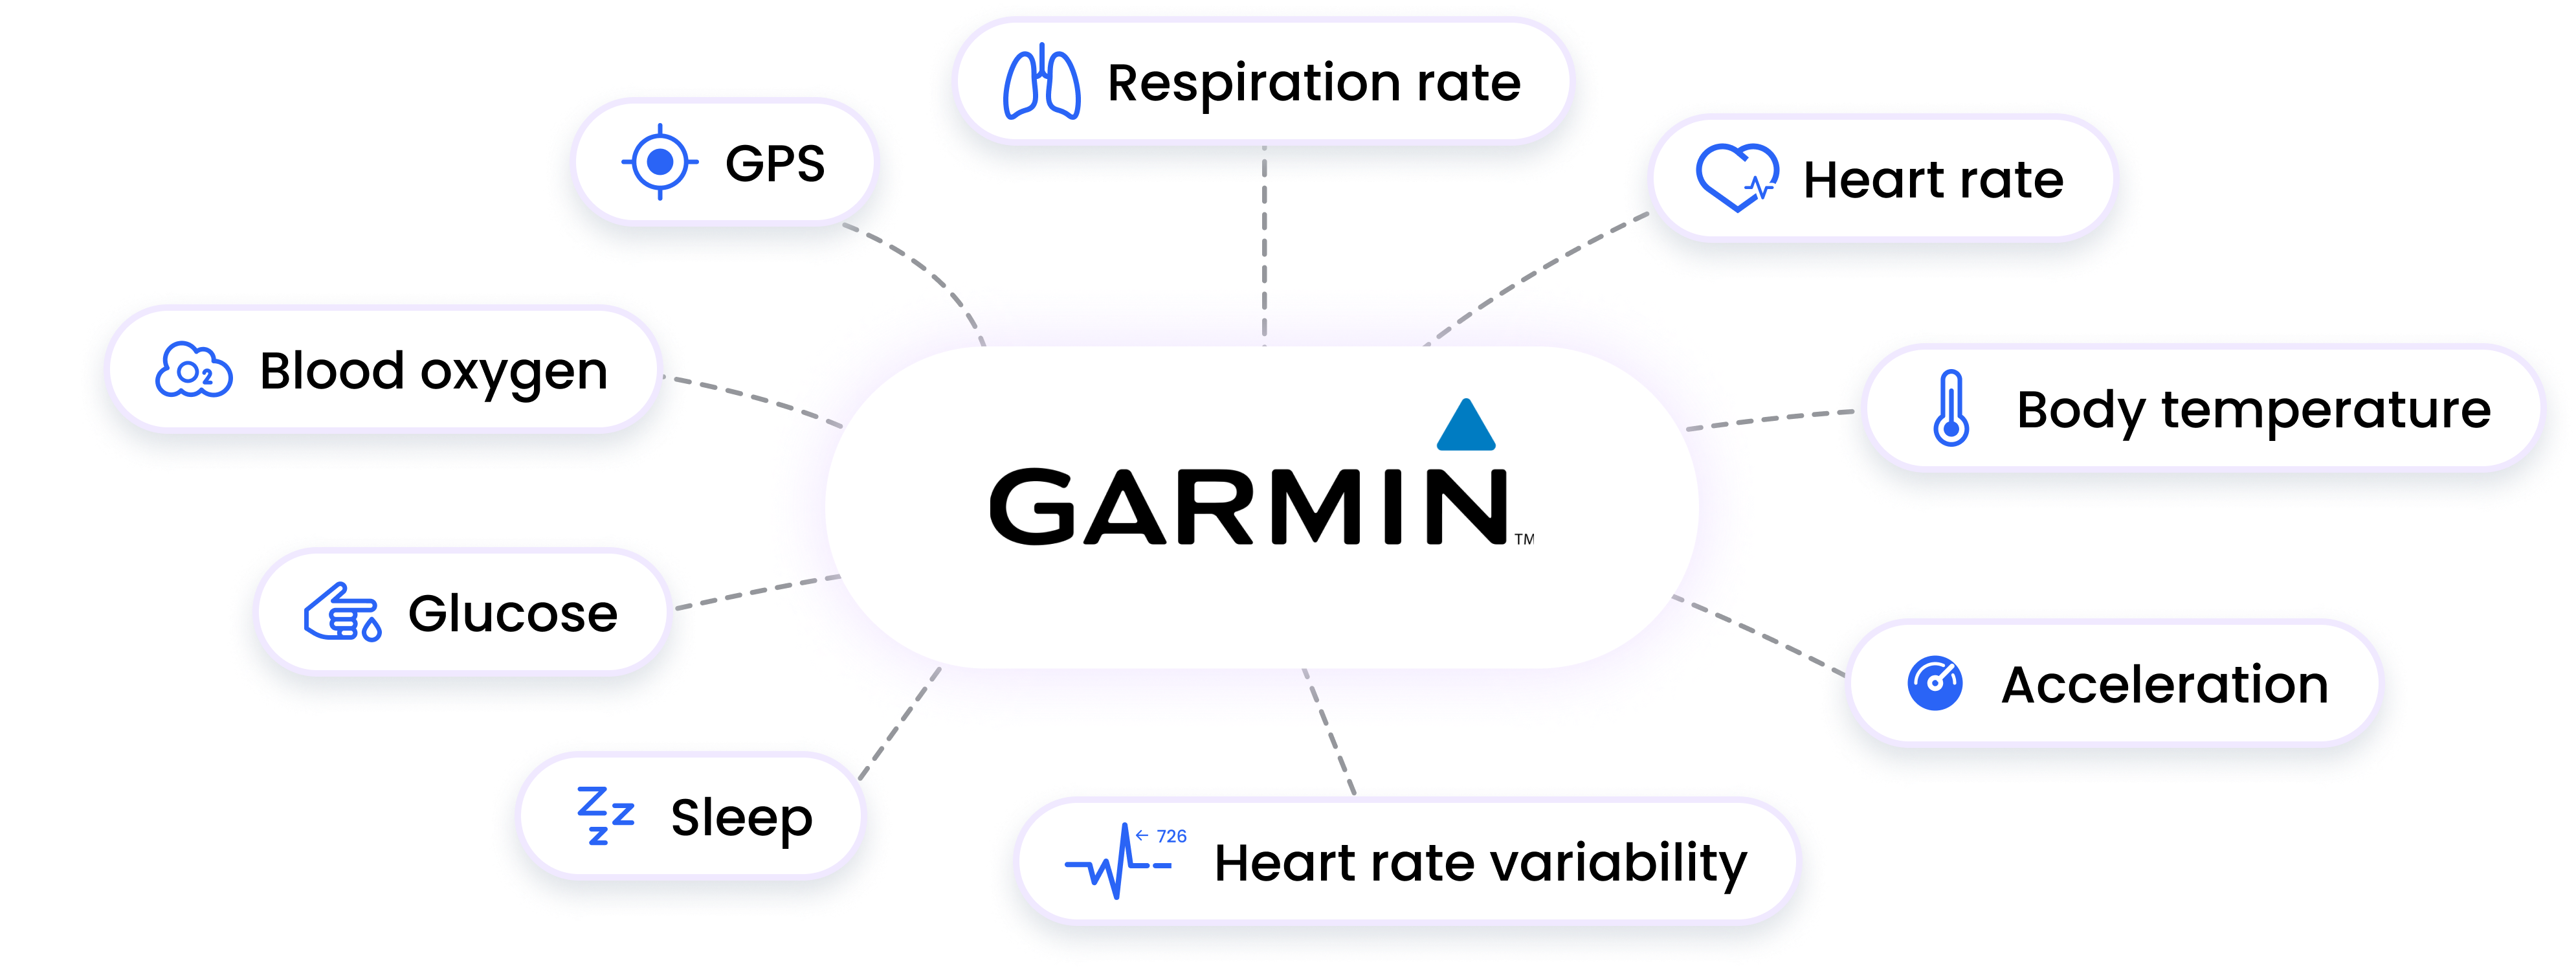 garmin integration data